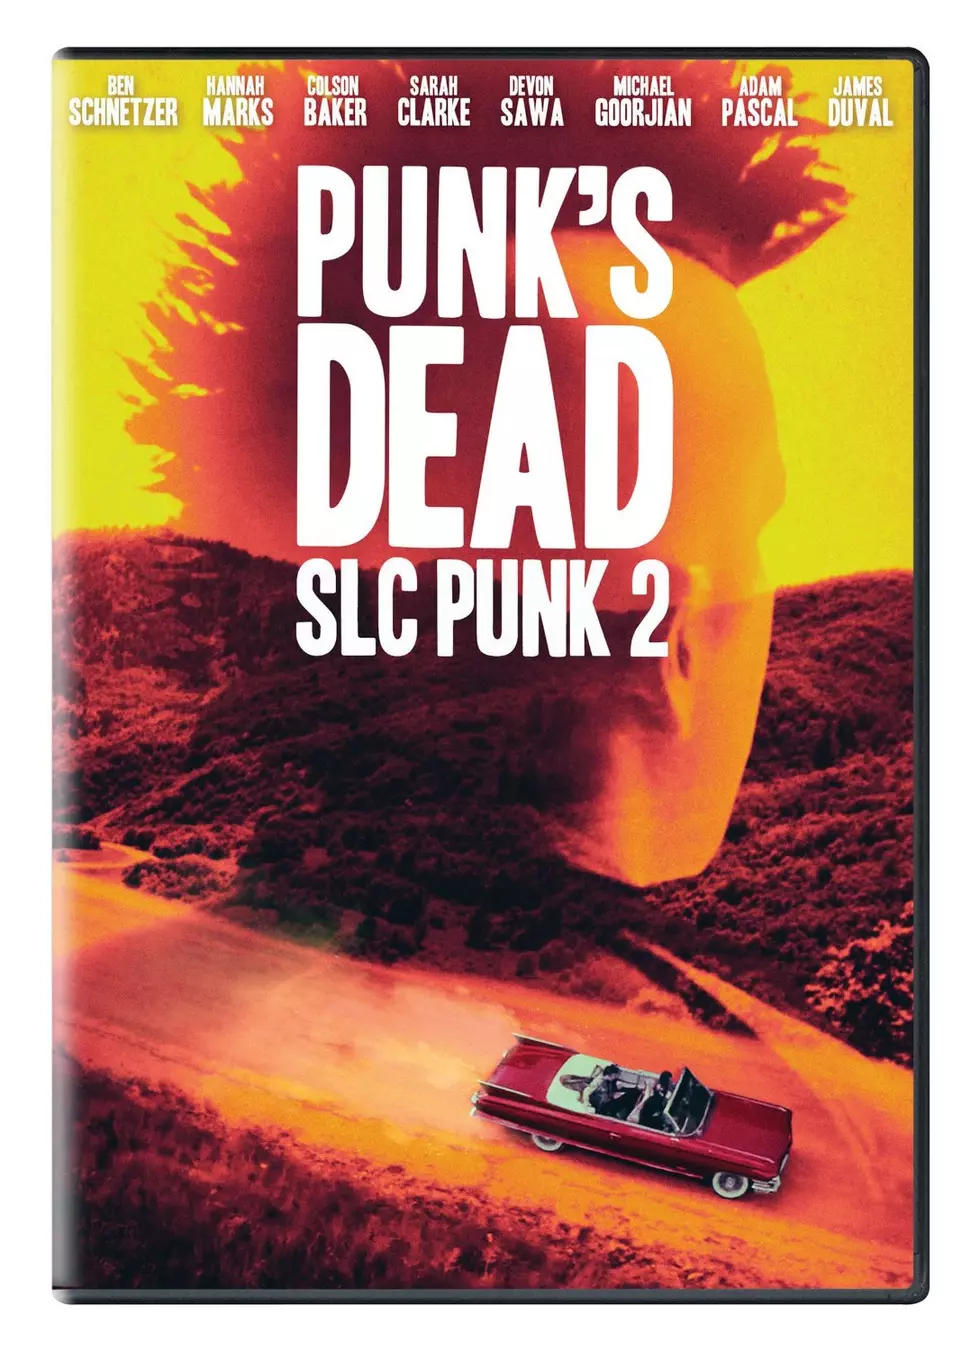 Win Punk’s Dead: SLC Punk 2 from Power 96